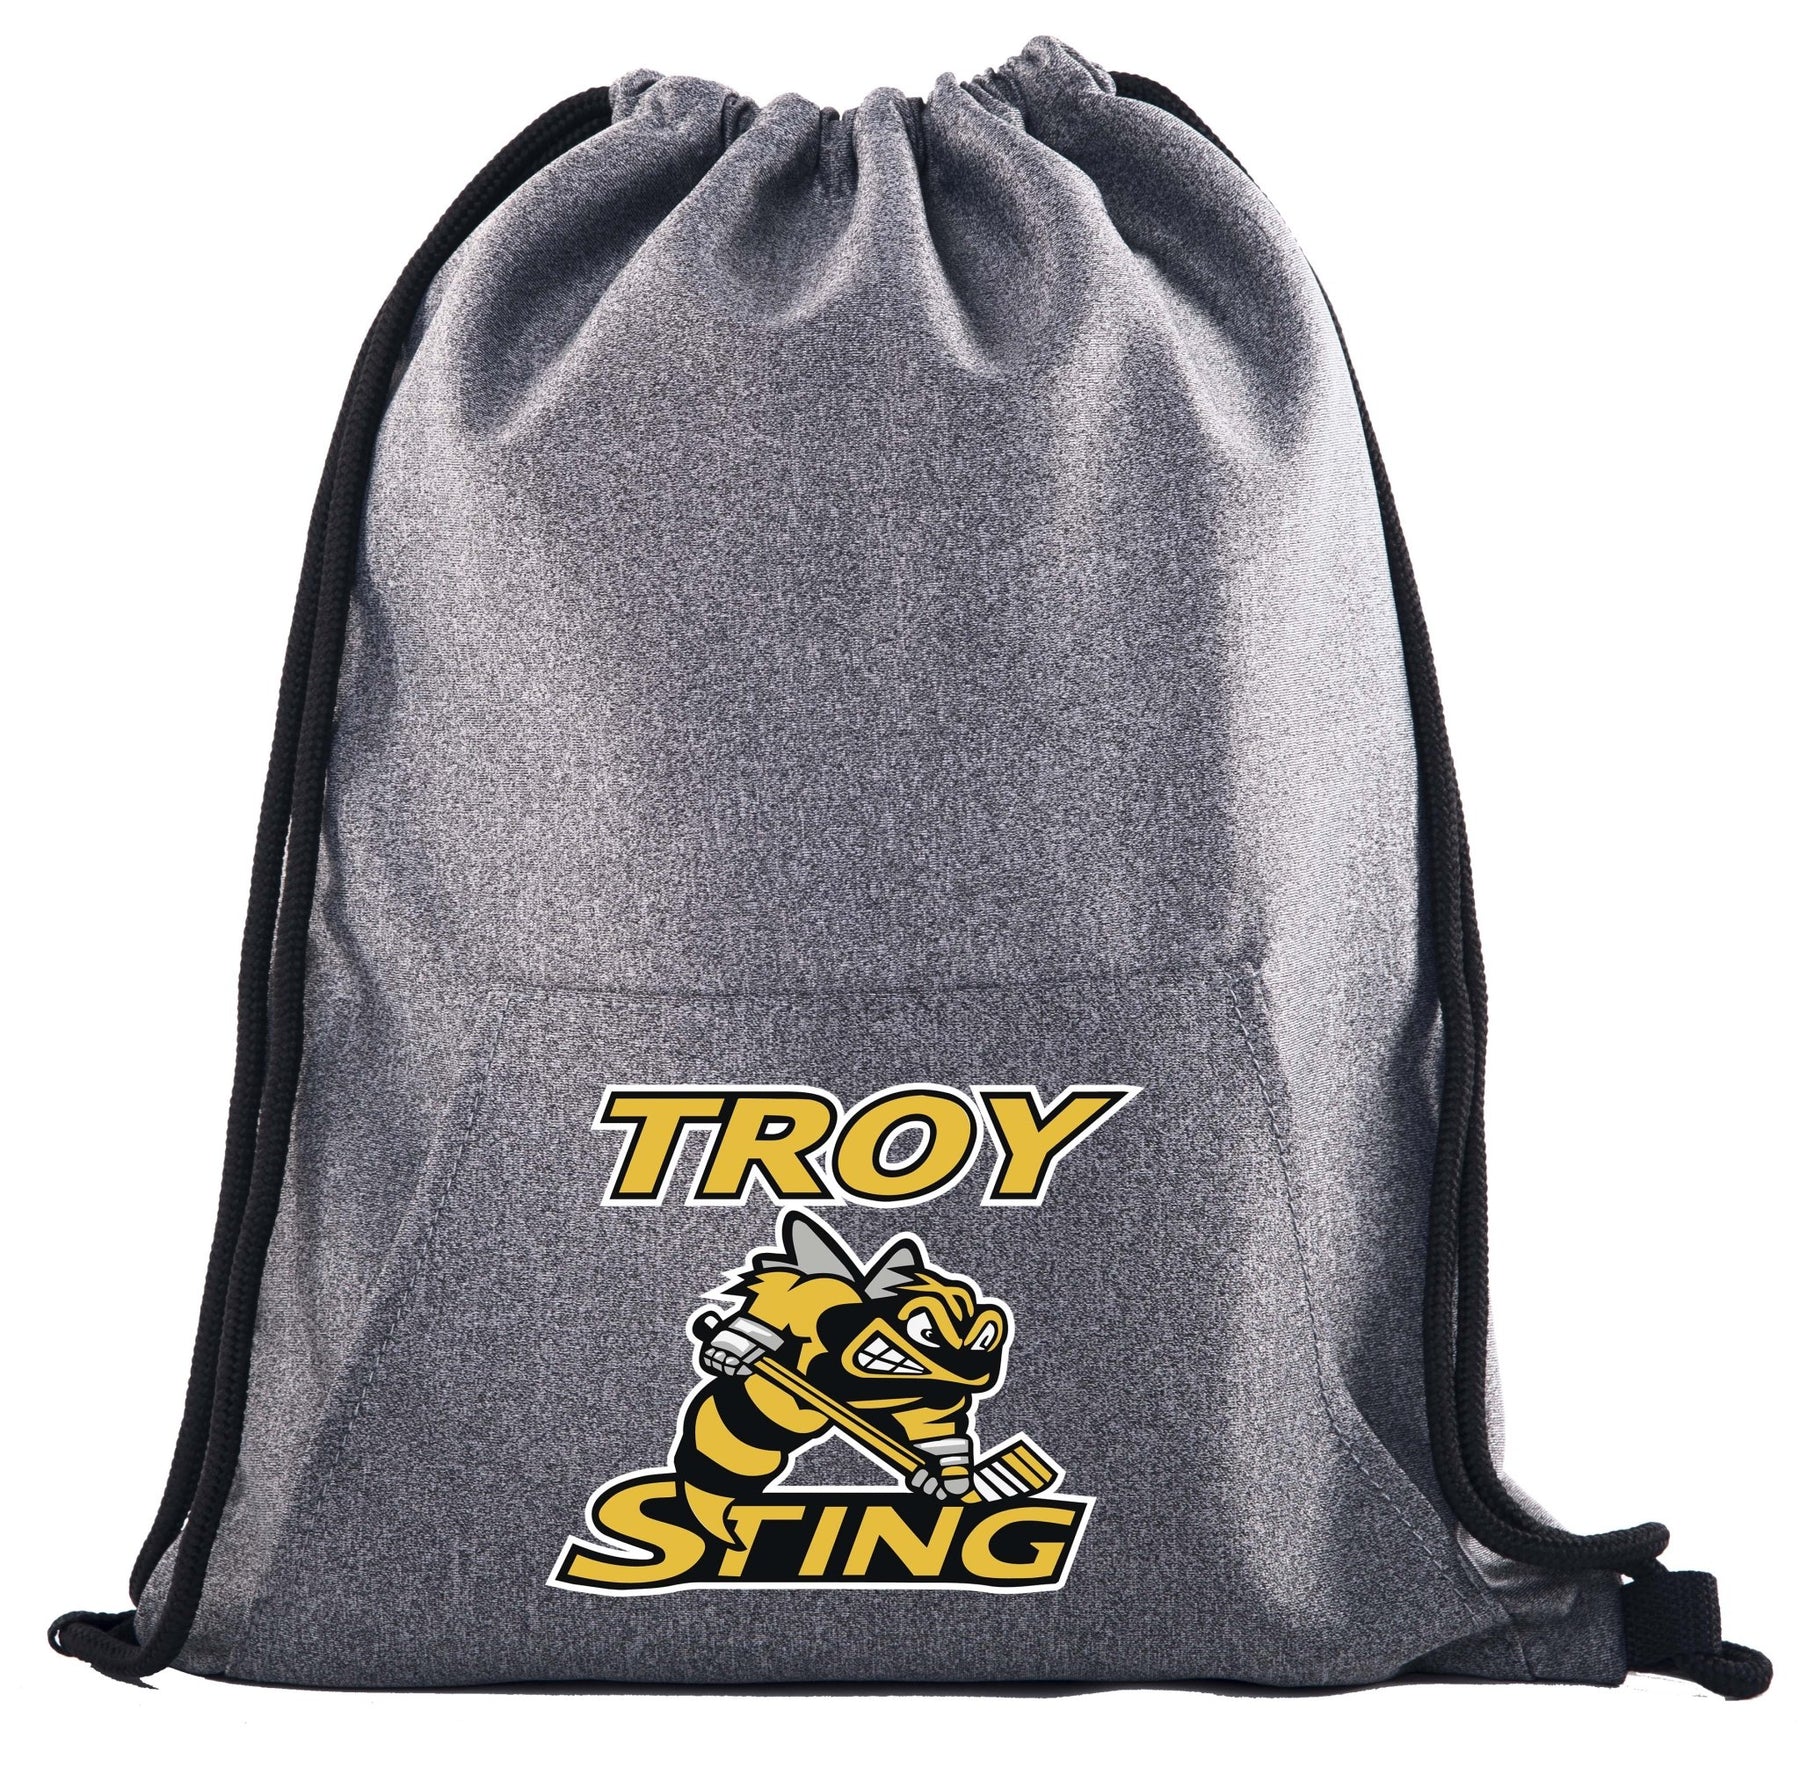 Troy Sting Drawstring Bag w/ Pocket Printed - Mato & Hash